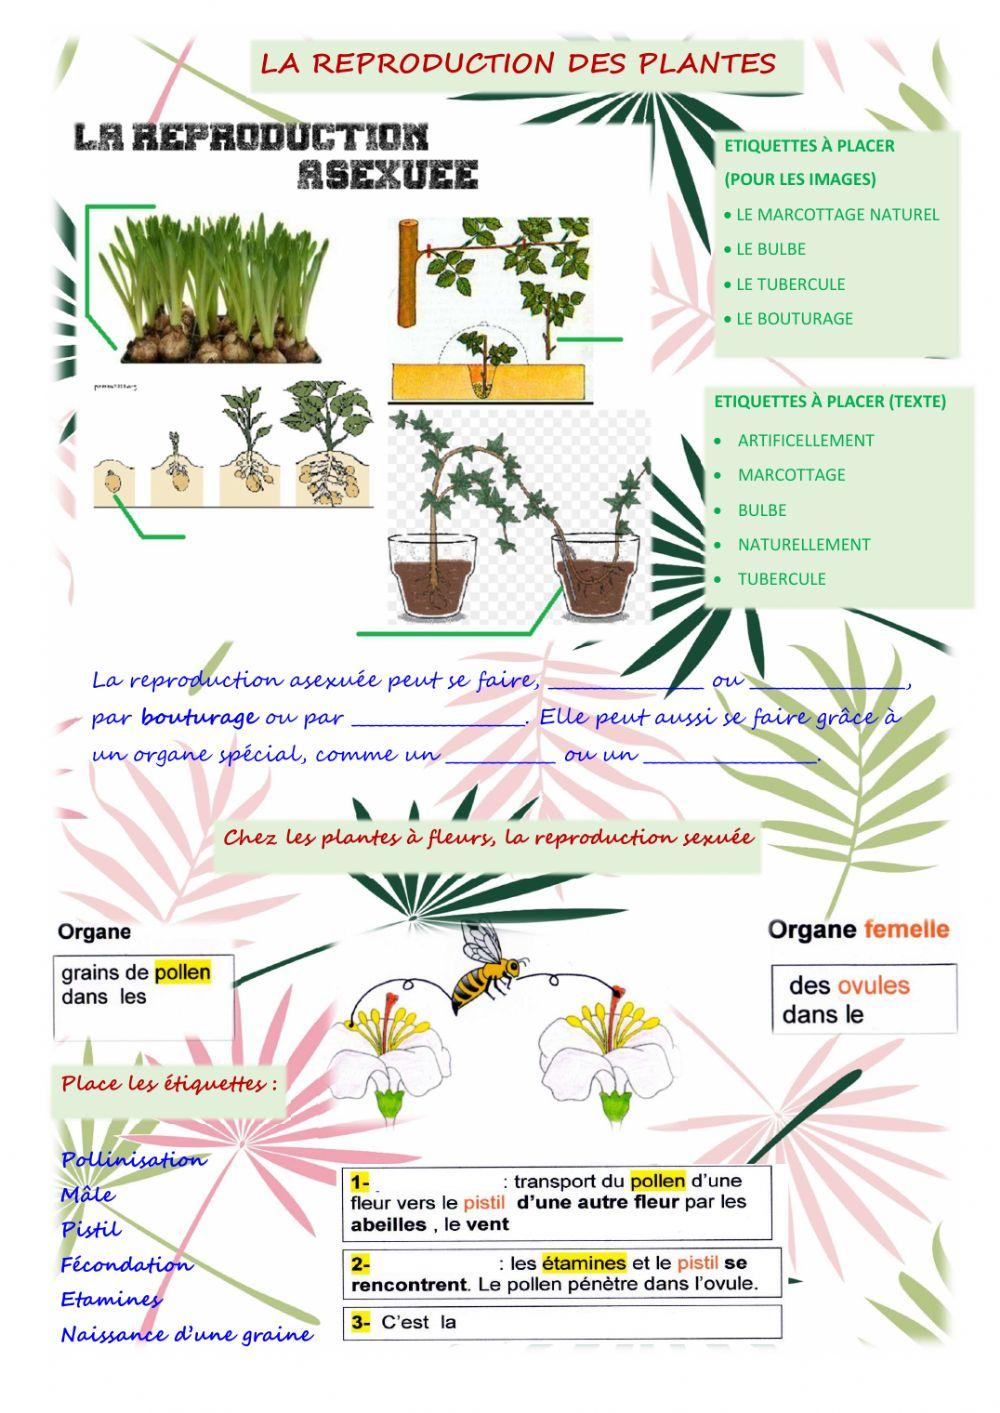 La reproduction des plantes